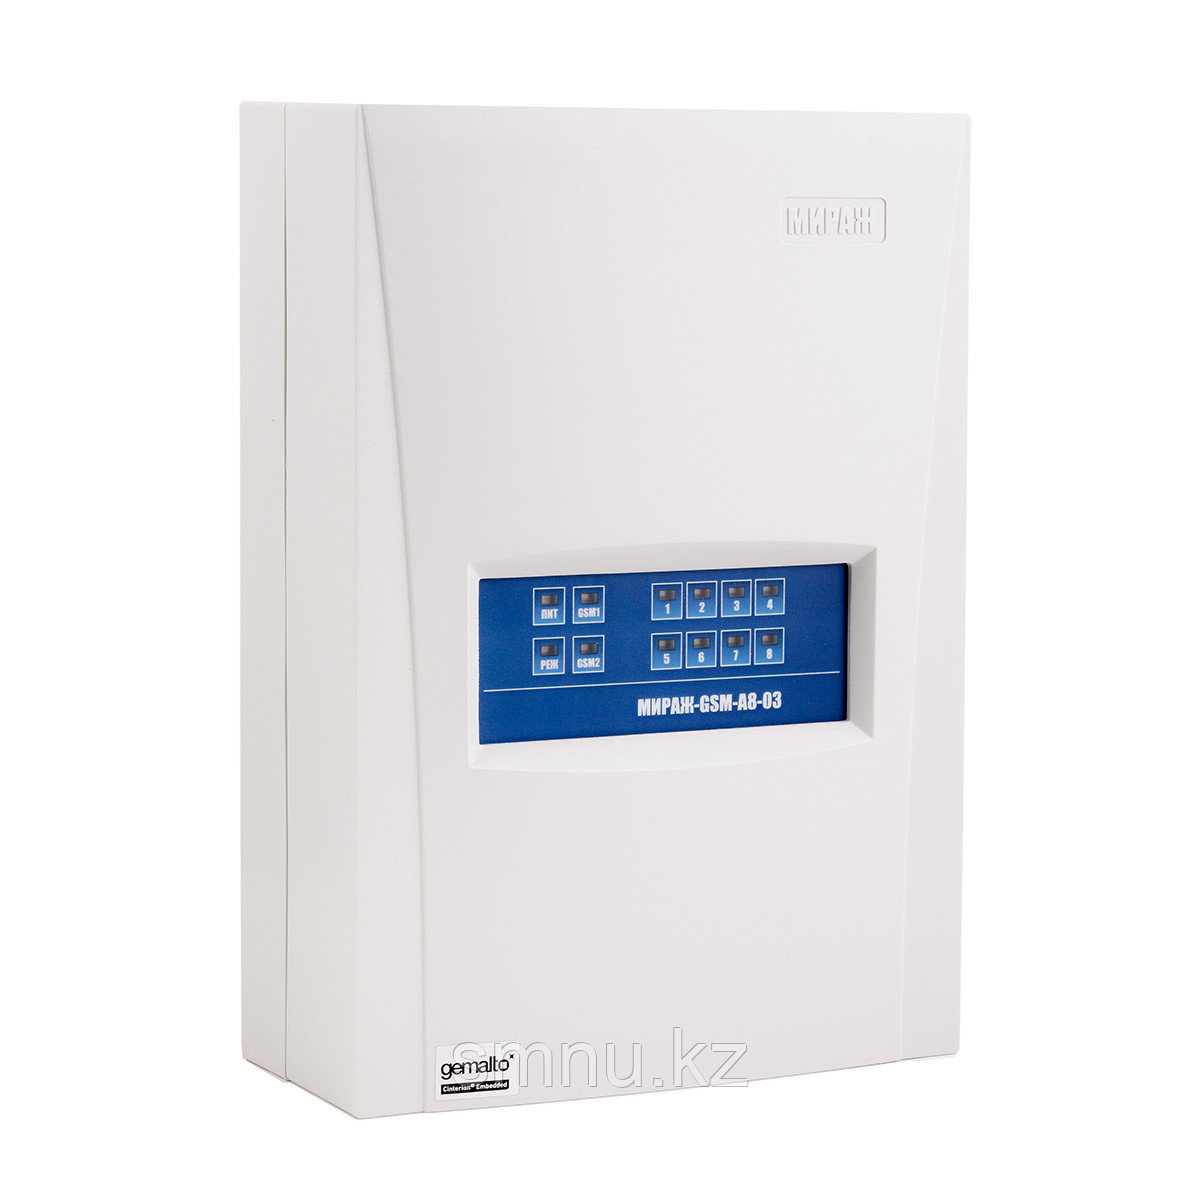 Мираж- GSM-А8-04 - Контроллер охранно-пожарной сигнализации с функциями "умного дома"